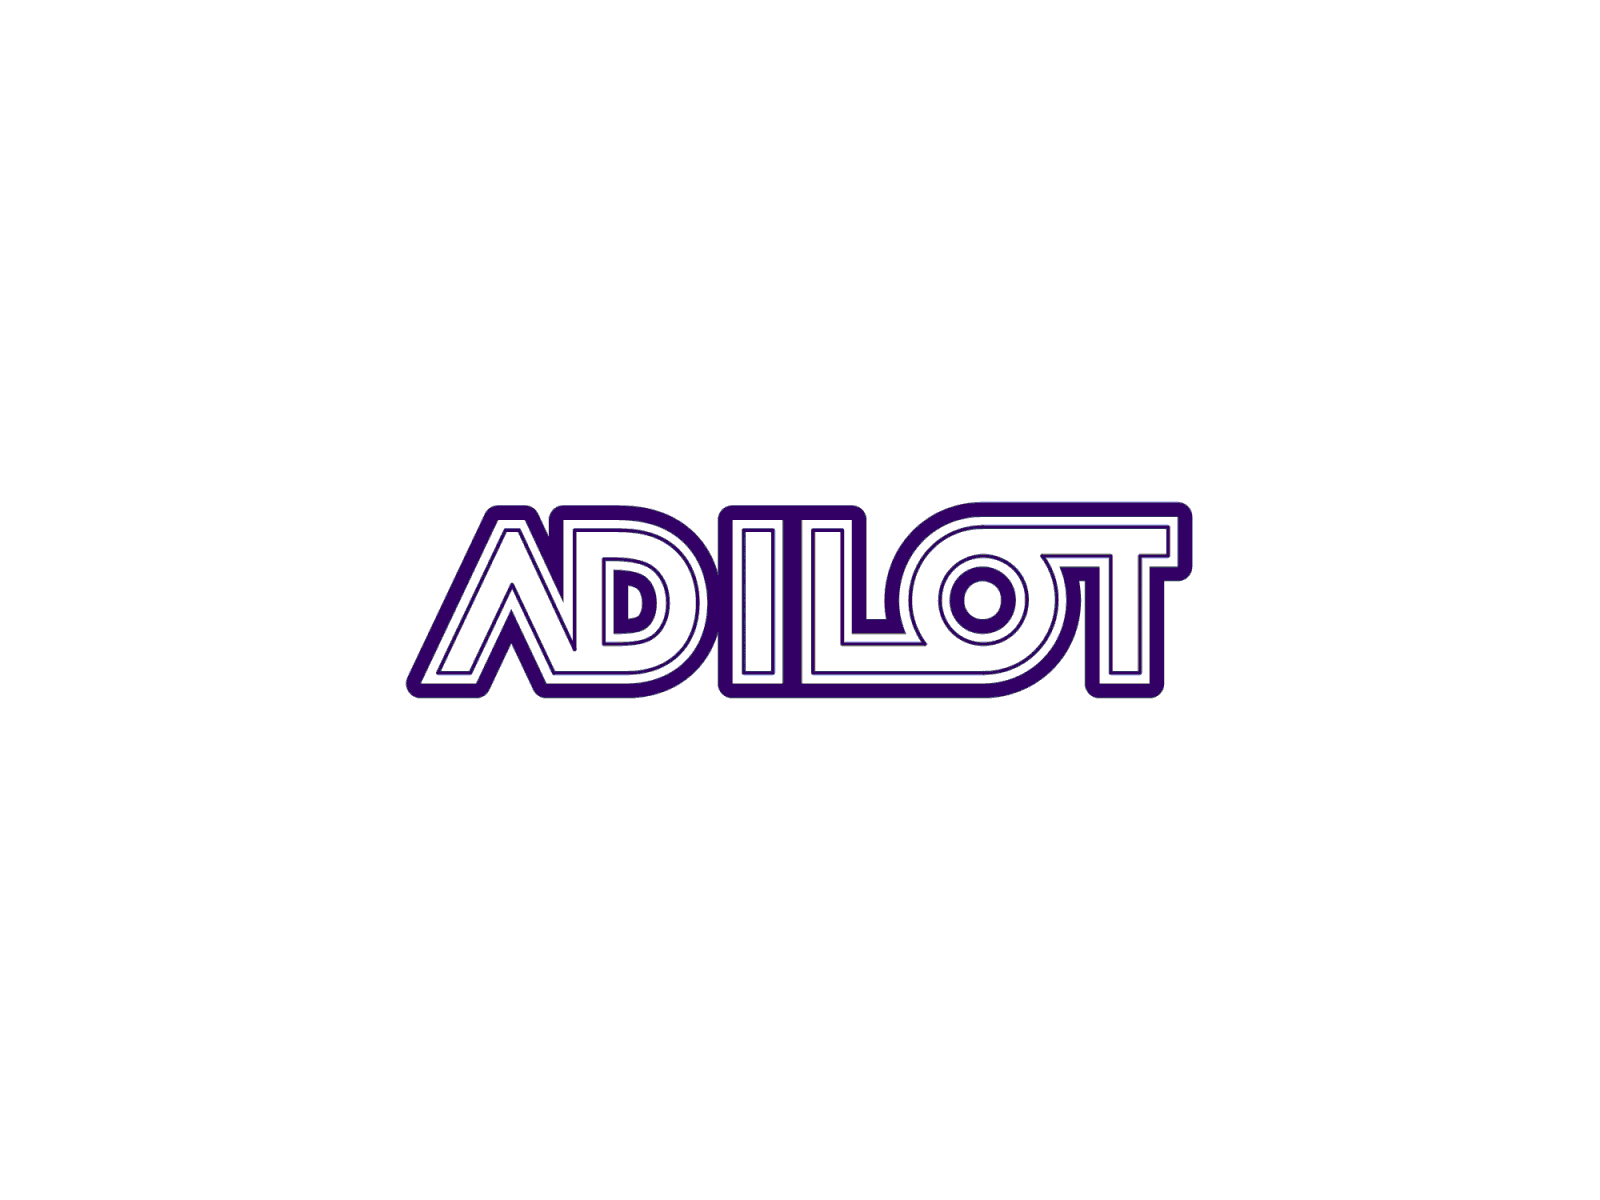 Adilot logo motion logo animation logodesign logomotion